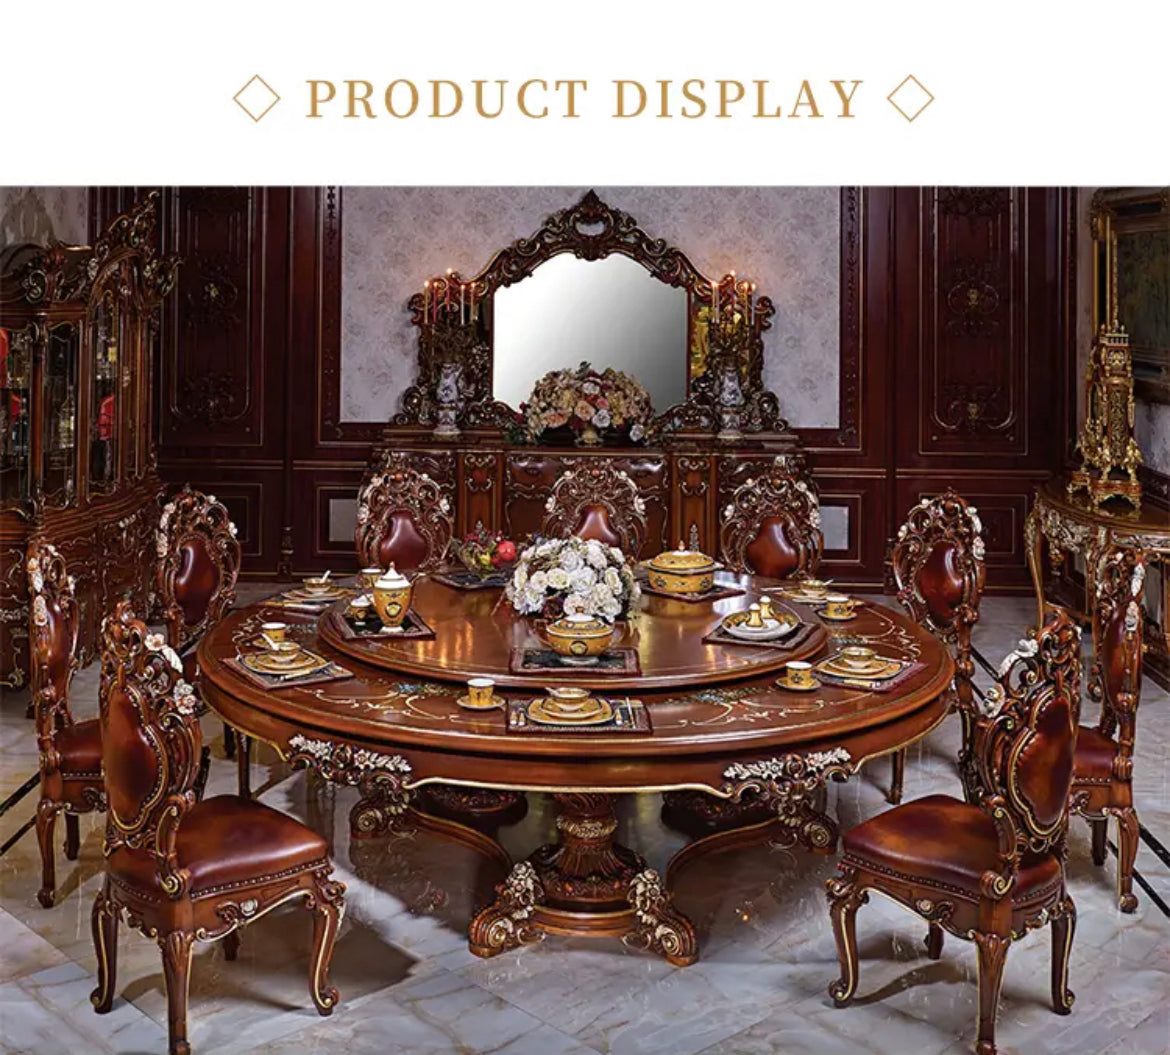 Juego de mesa tallada de lujo para comedor, diseño barroco francés, hecho a mano, estilo antiguo